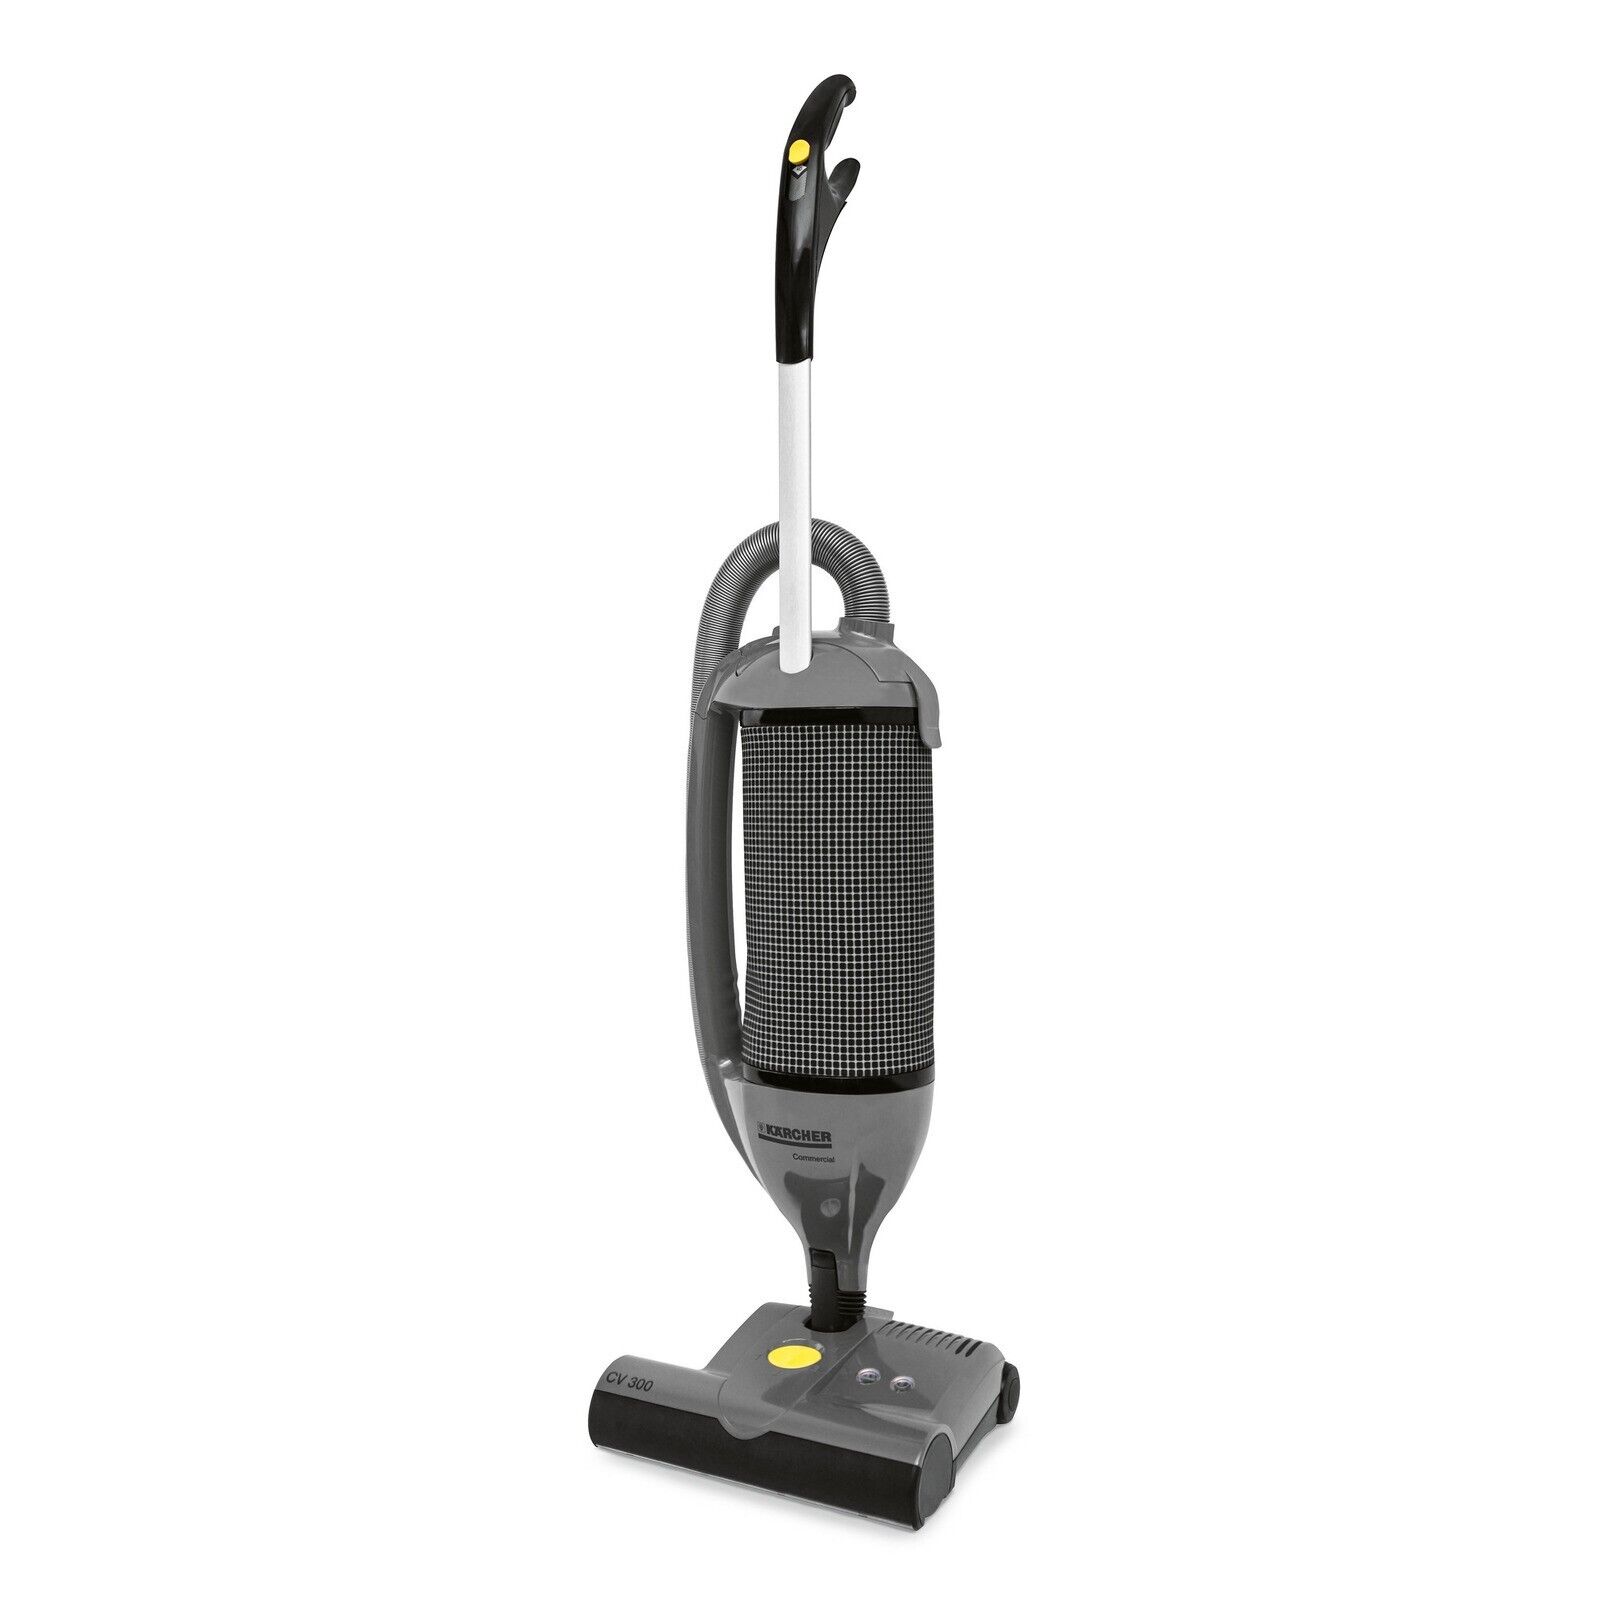 Karcher CV300 Commercial Upright Vacuum Cleaner #1.012-059.0